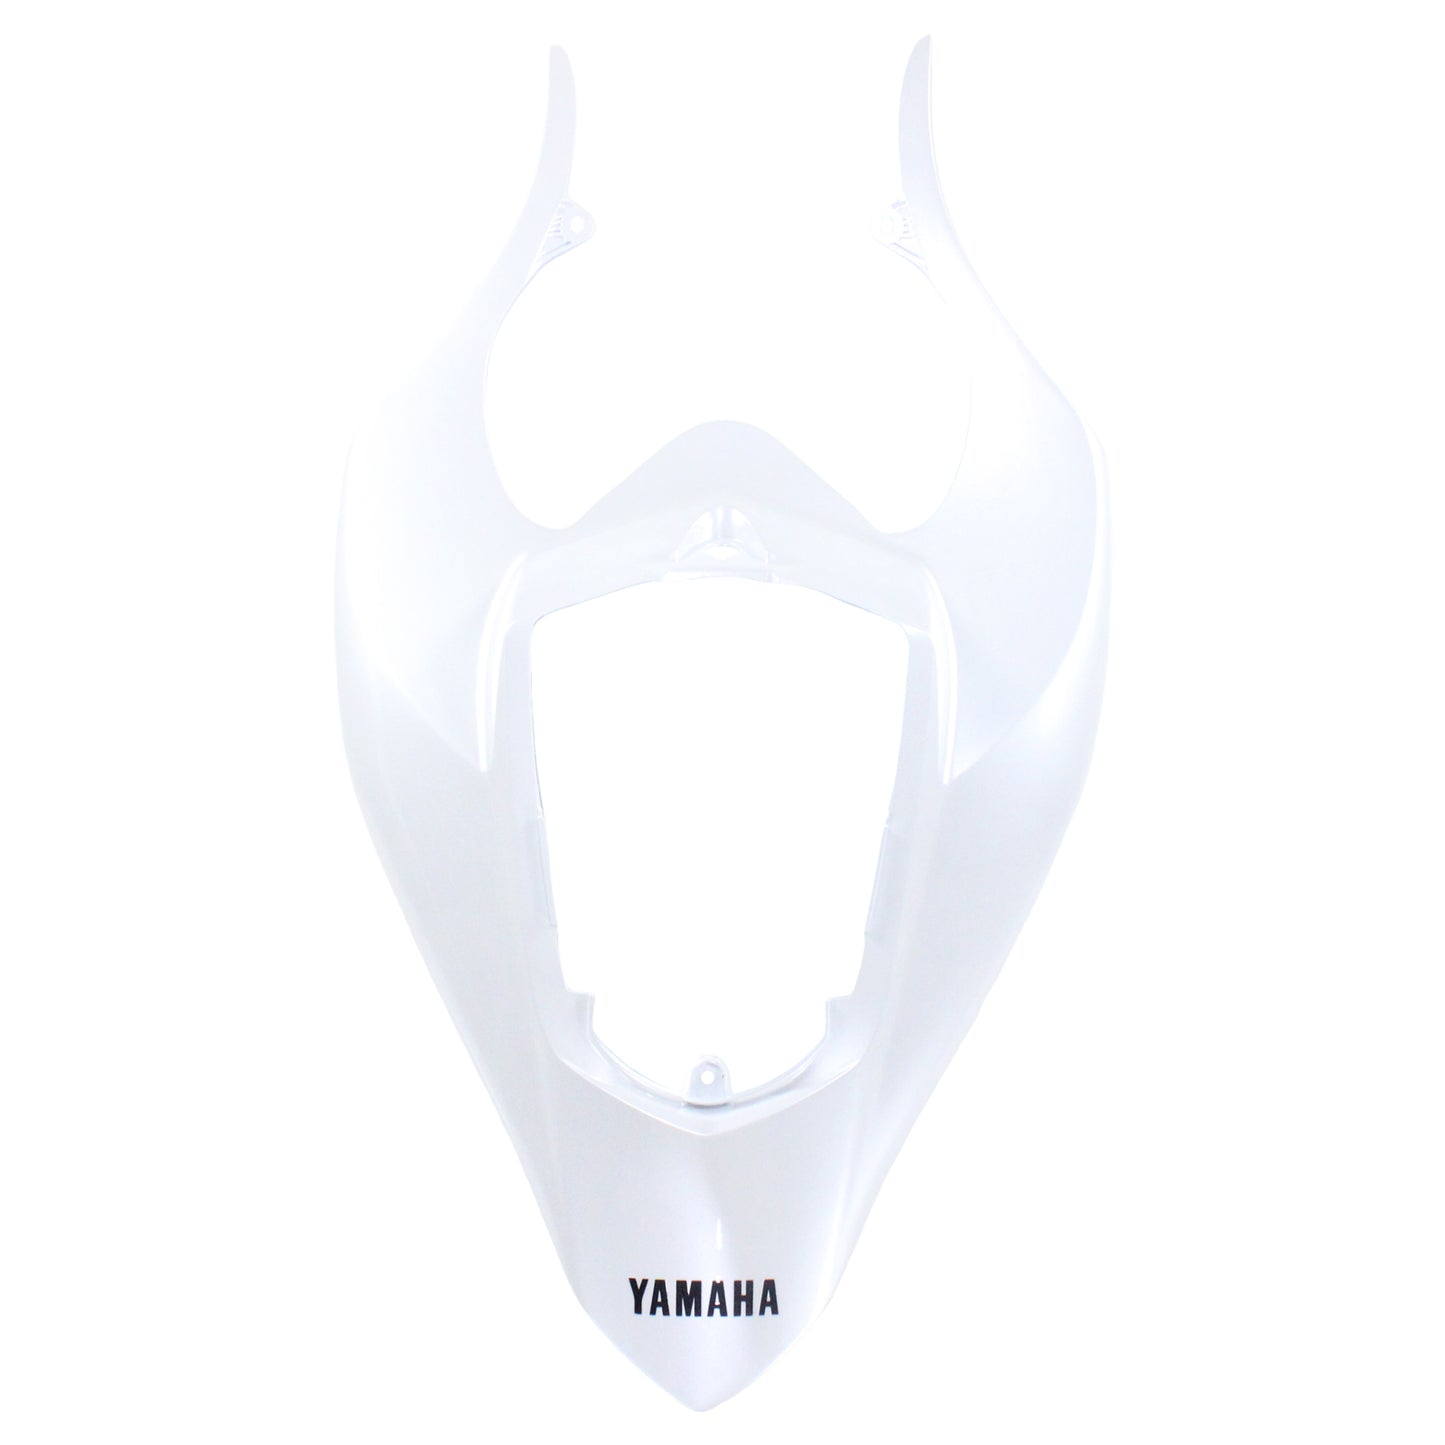 Amotopart Verkleidung fit für Yamaha YZF 1000 R1 2004-2006